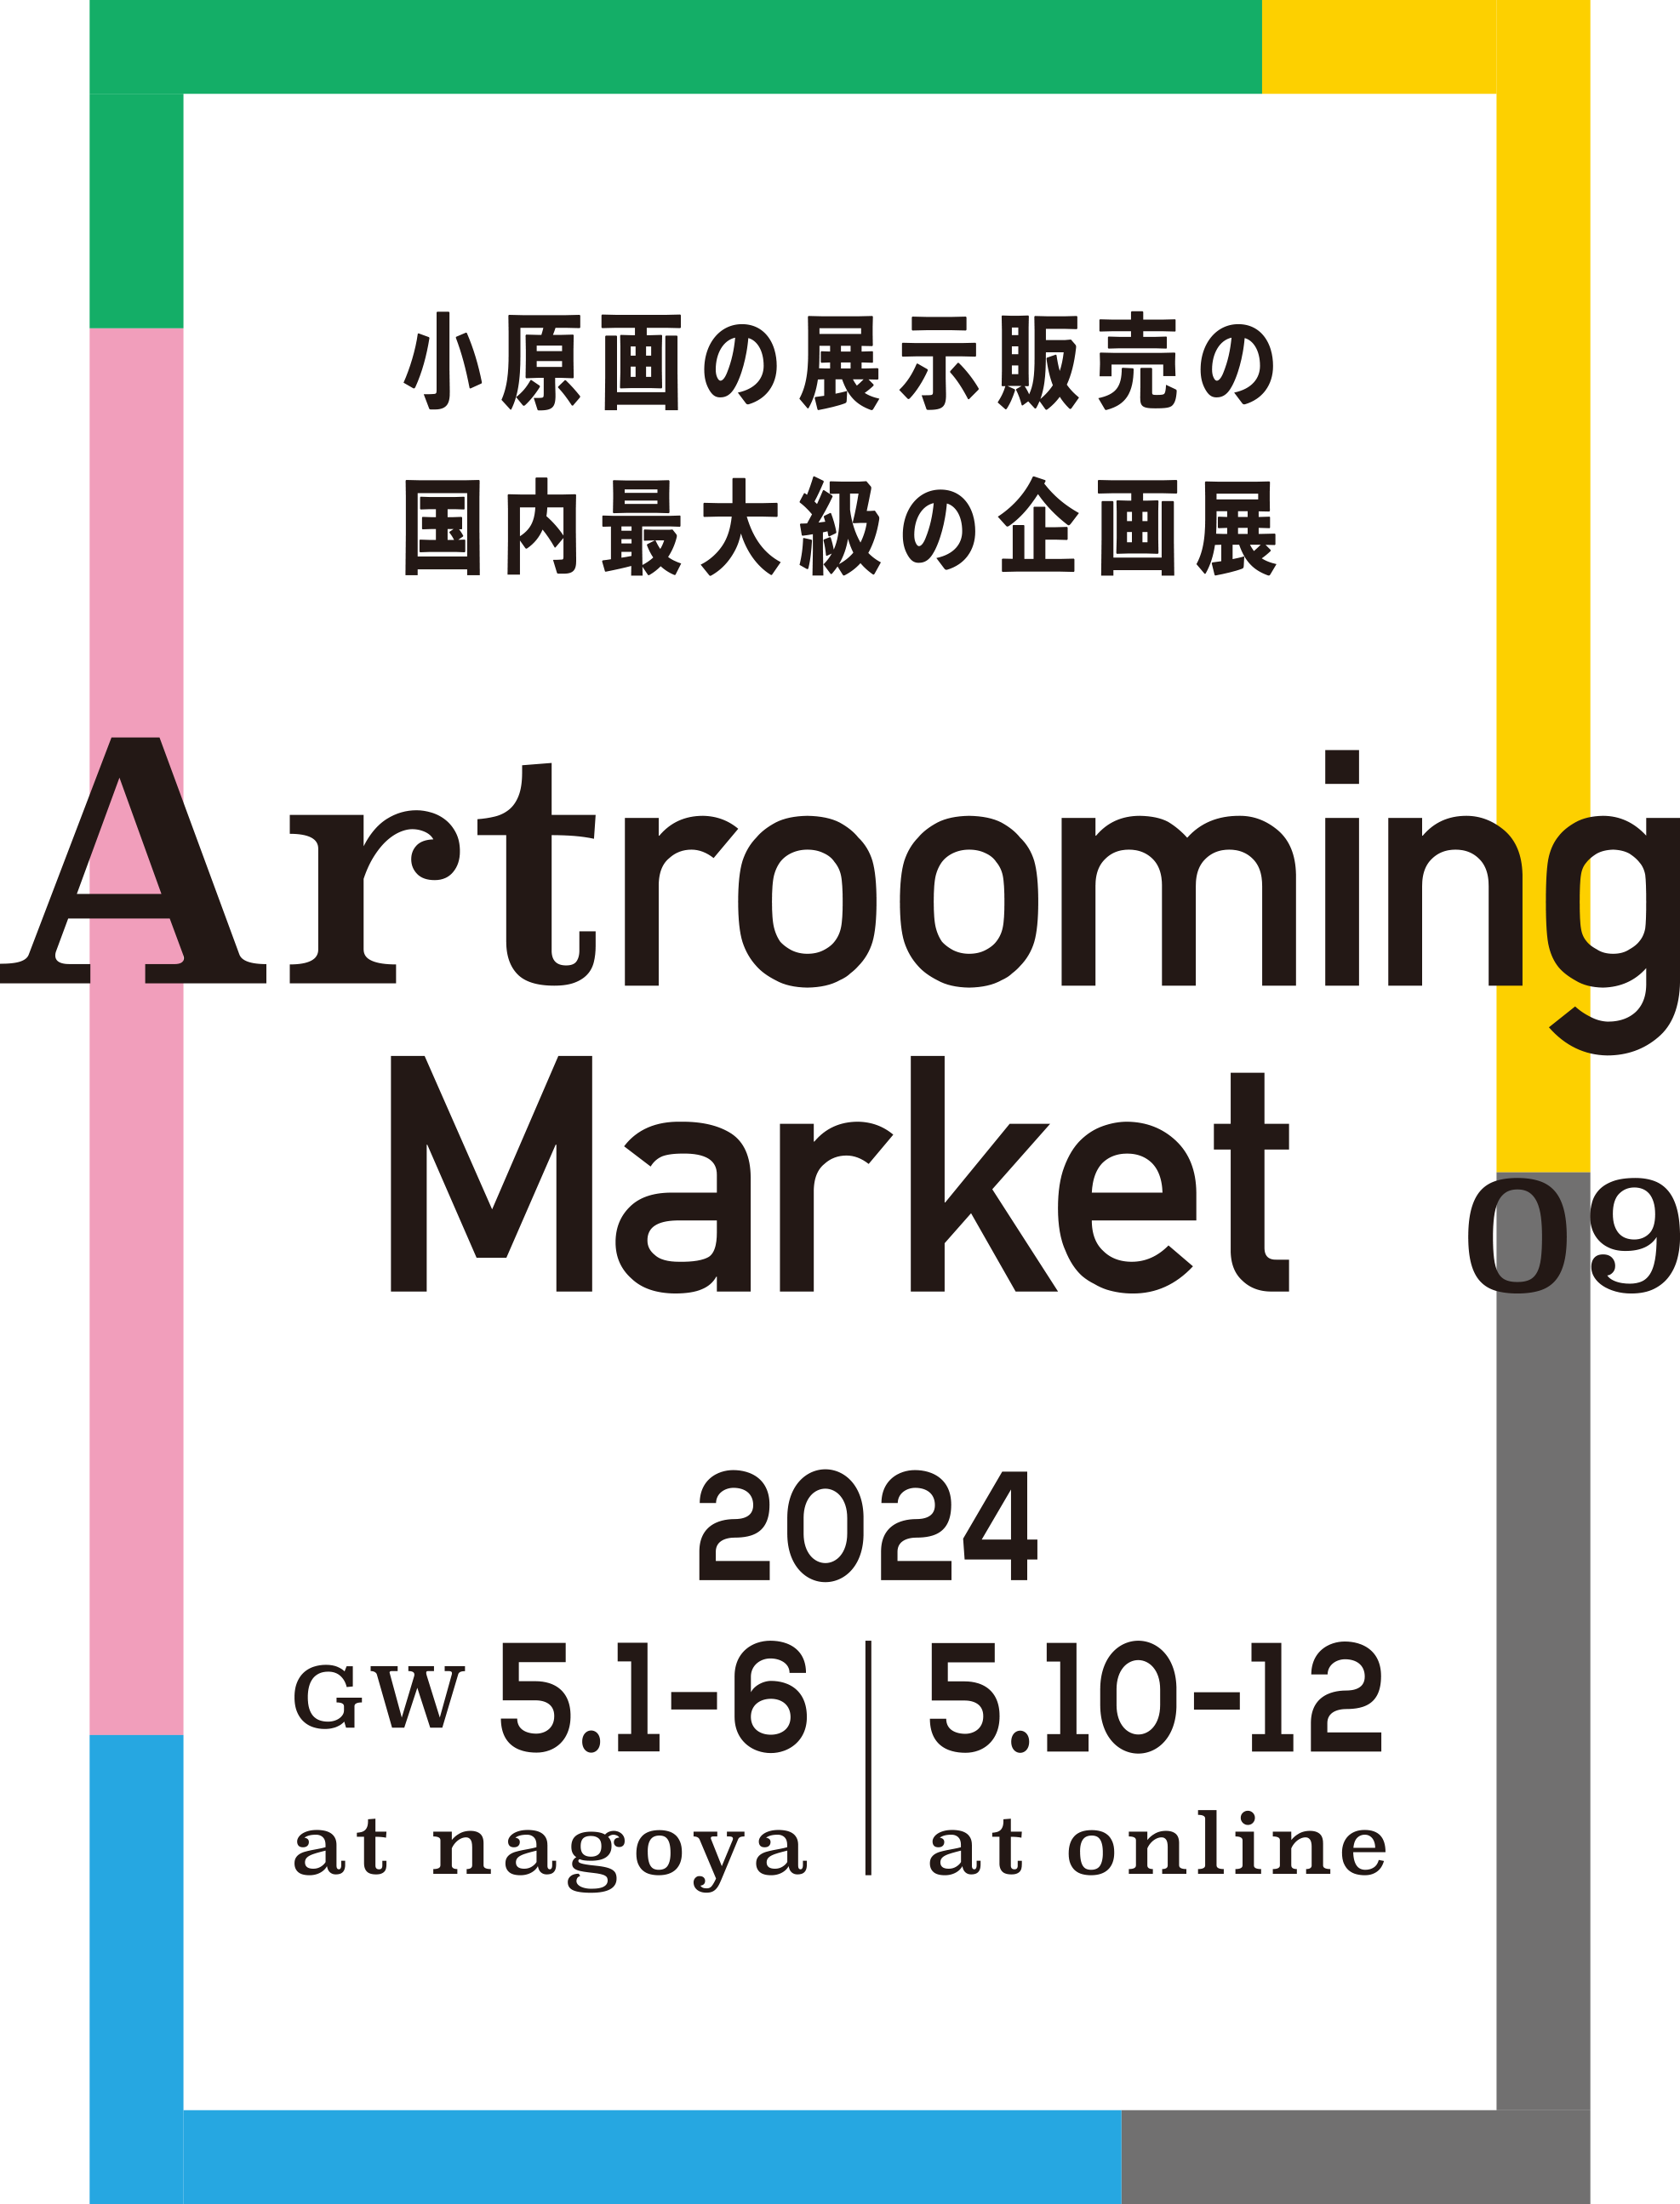 Artrooming Market 09